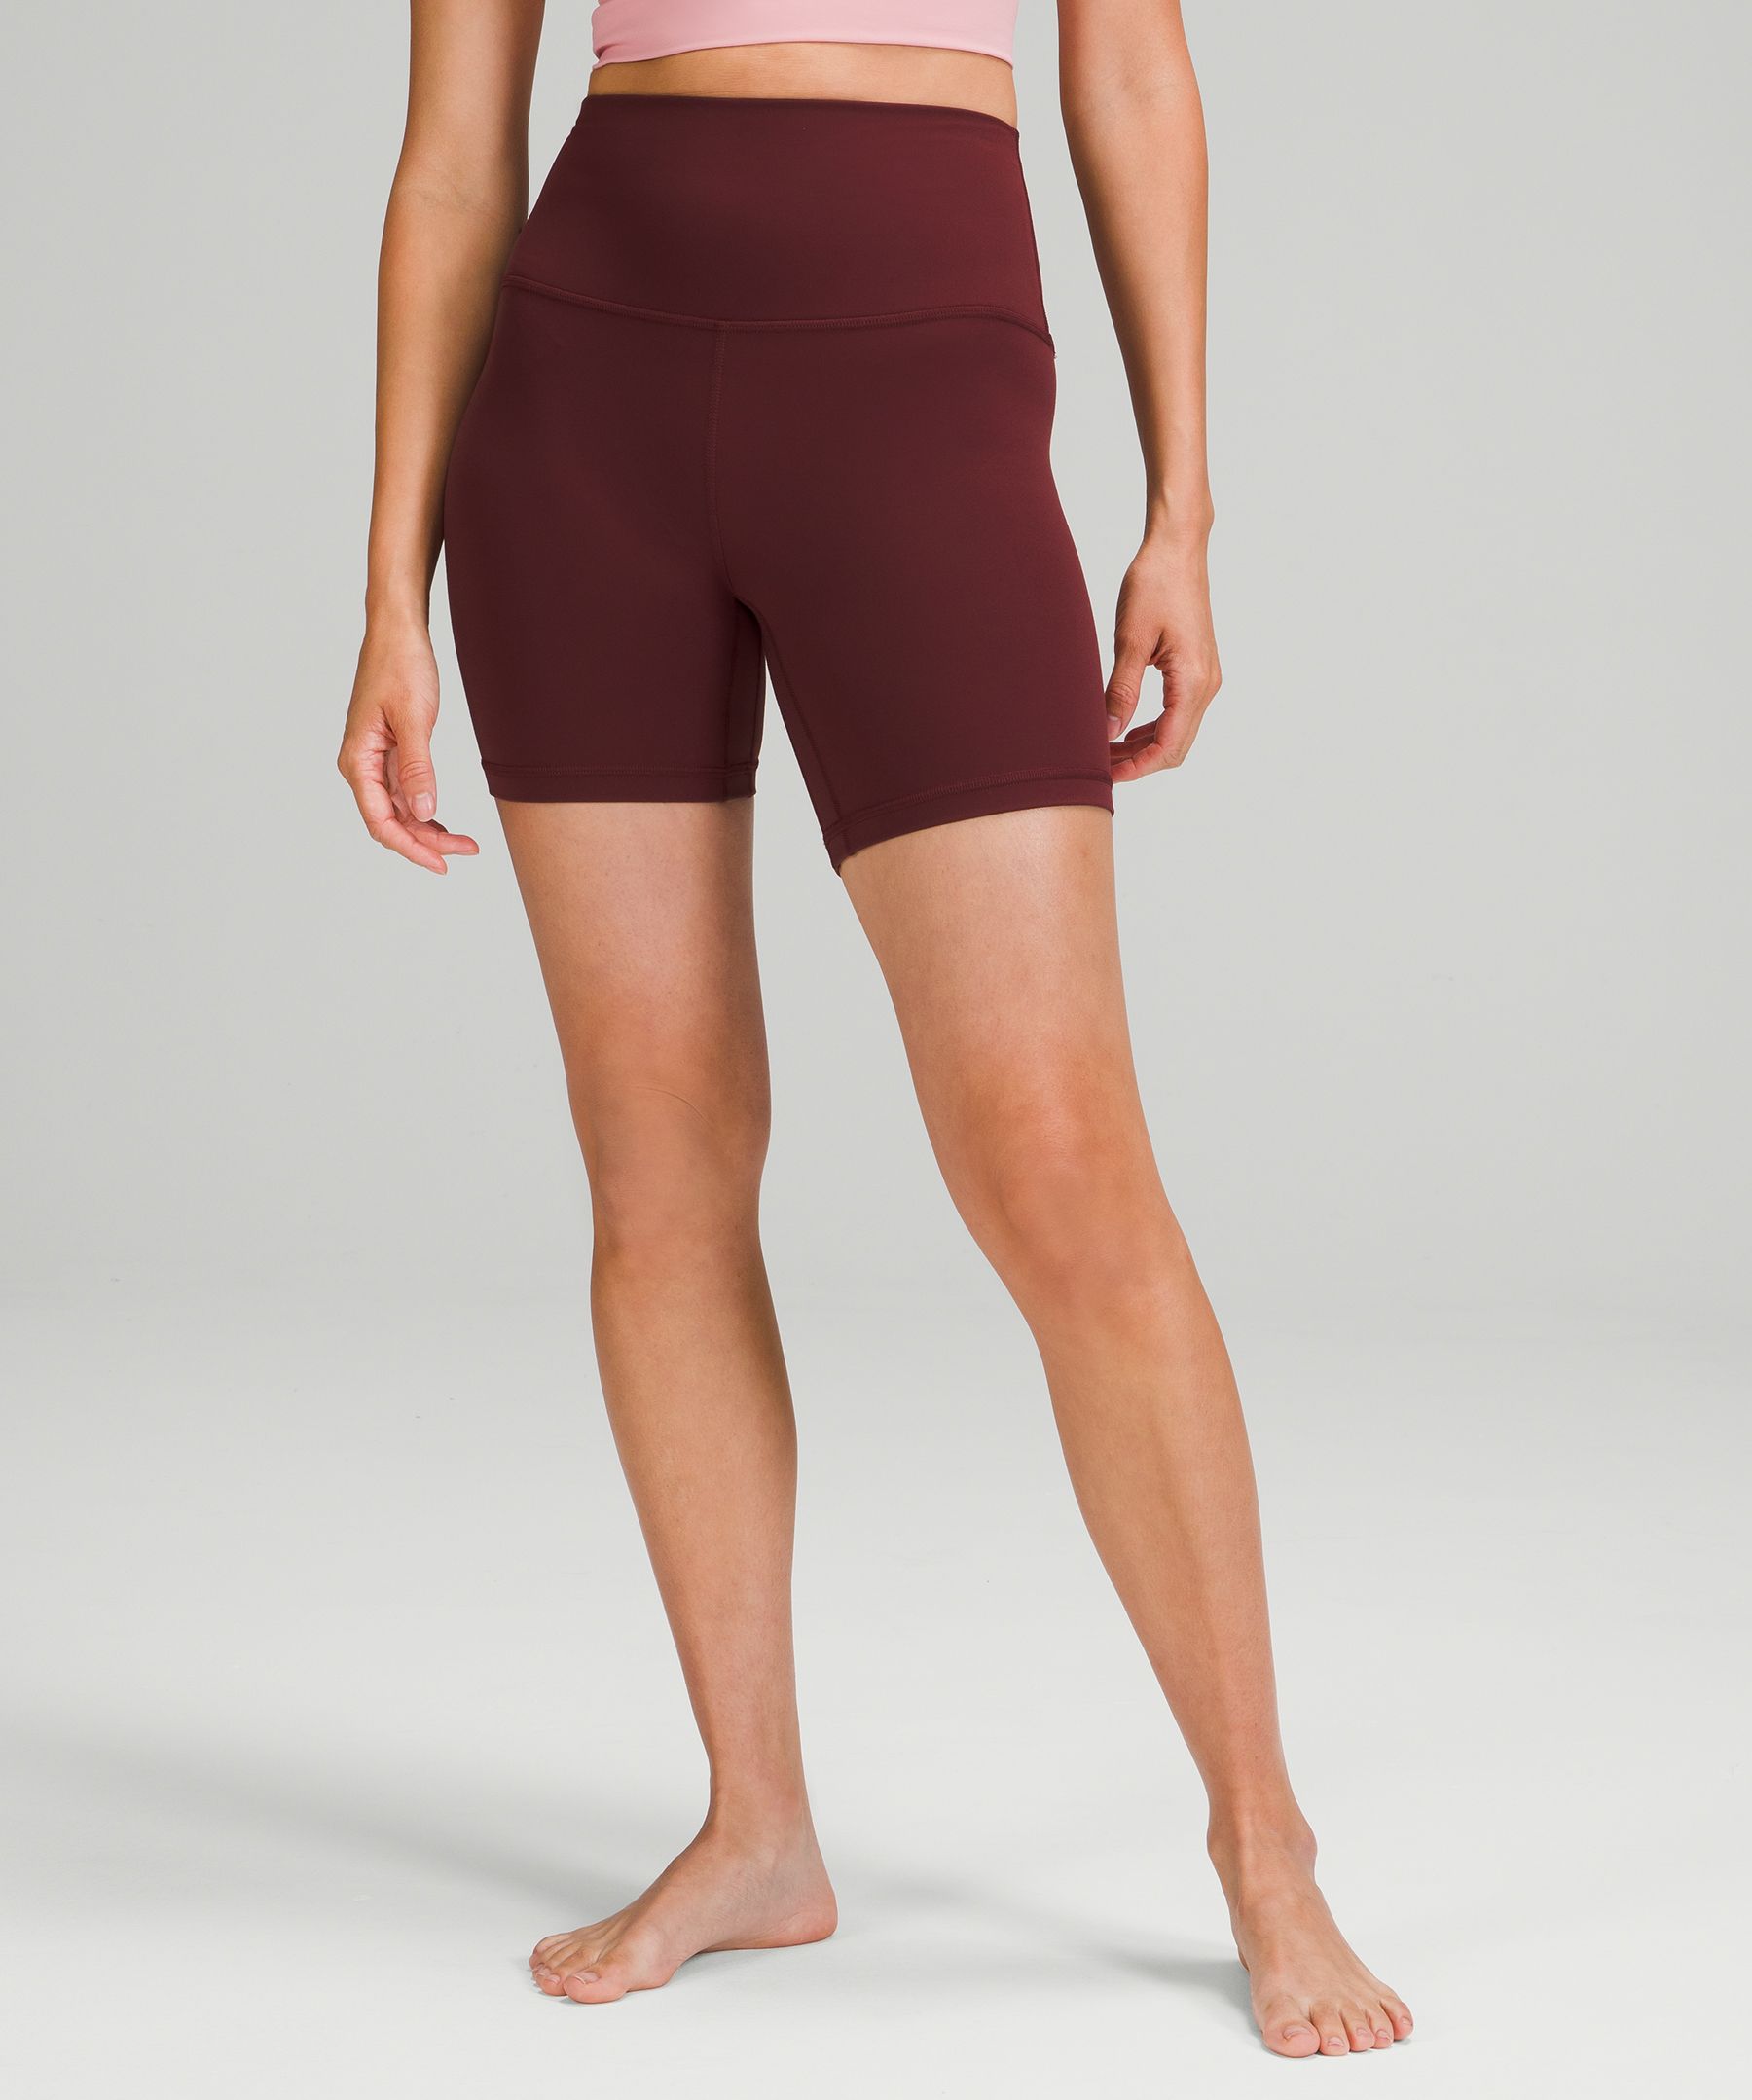 Lululemon Align™ High-rise Shorts 6" In Red Merlot